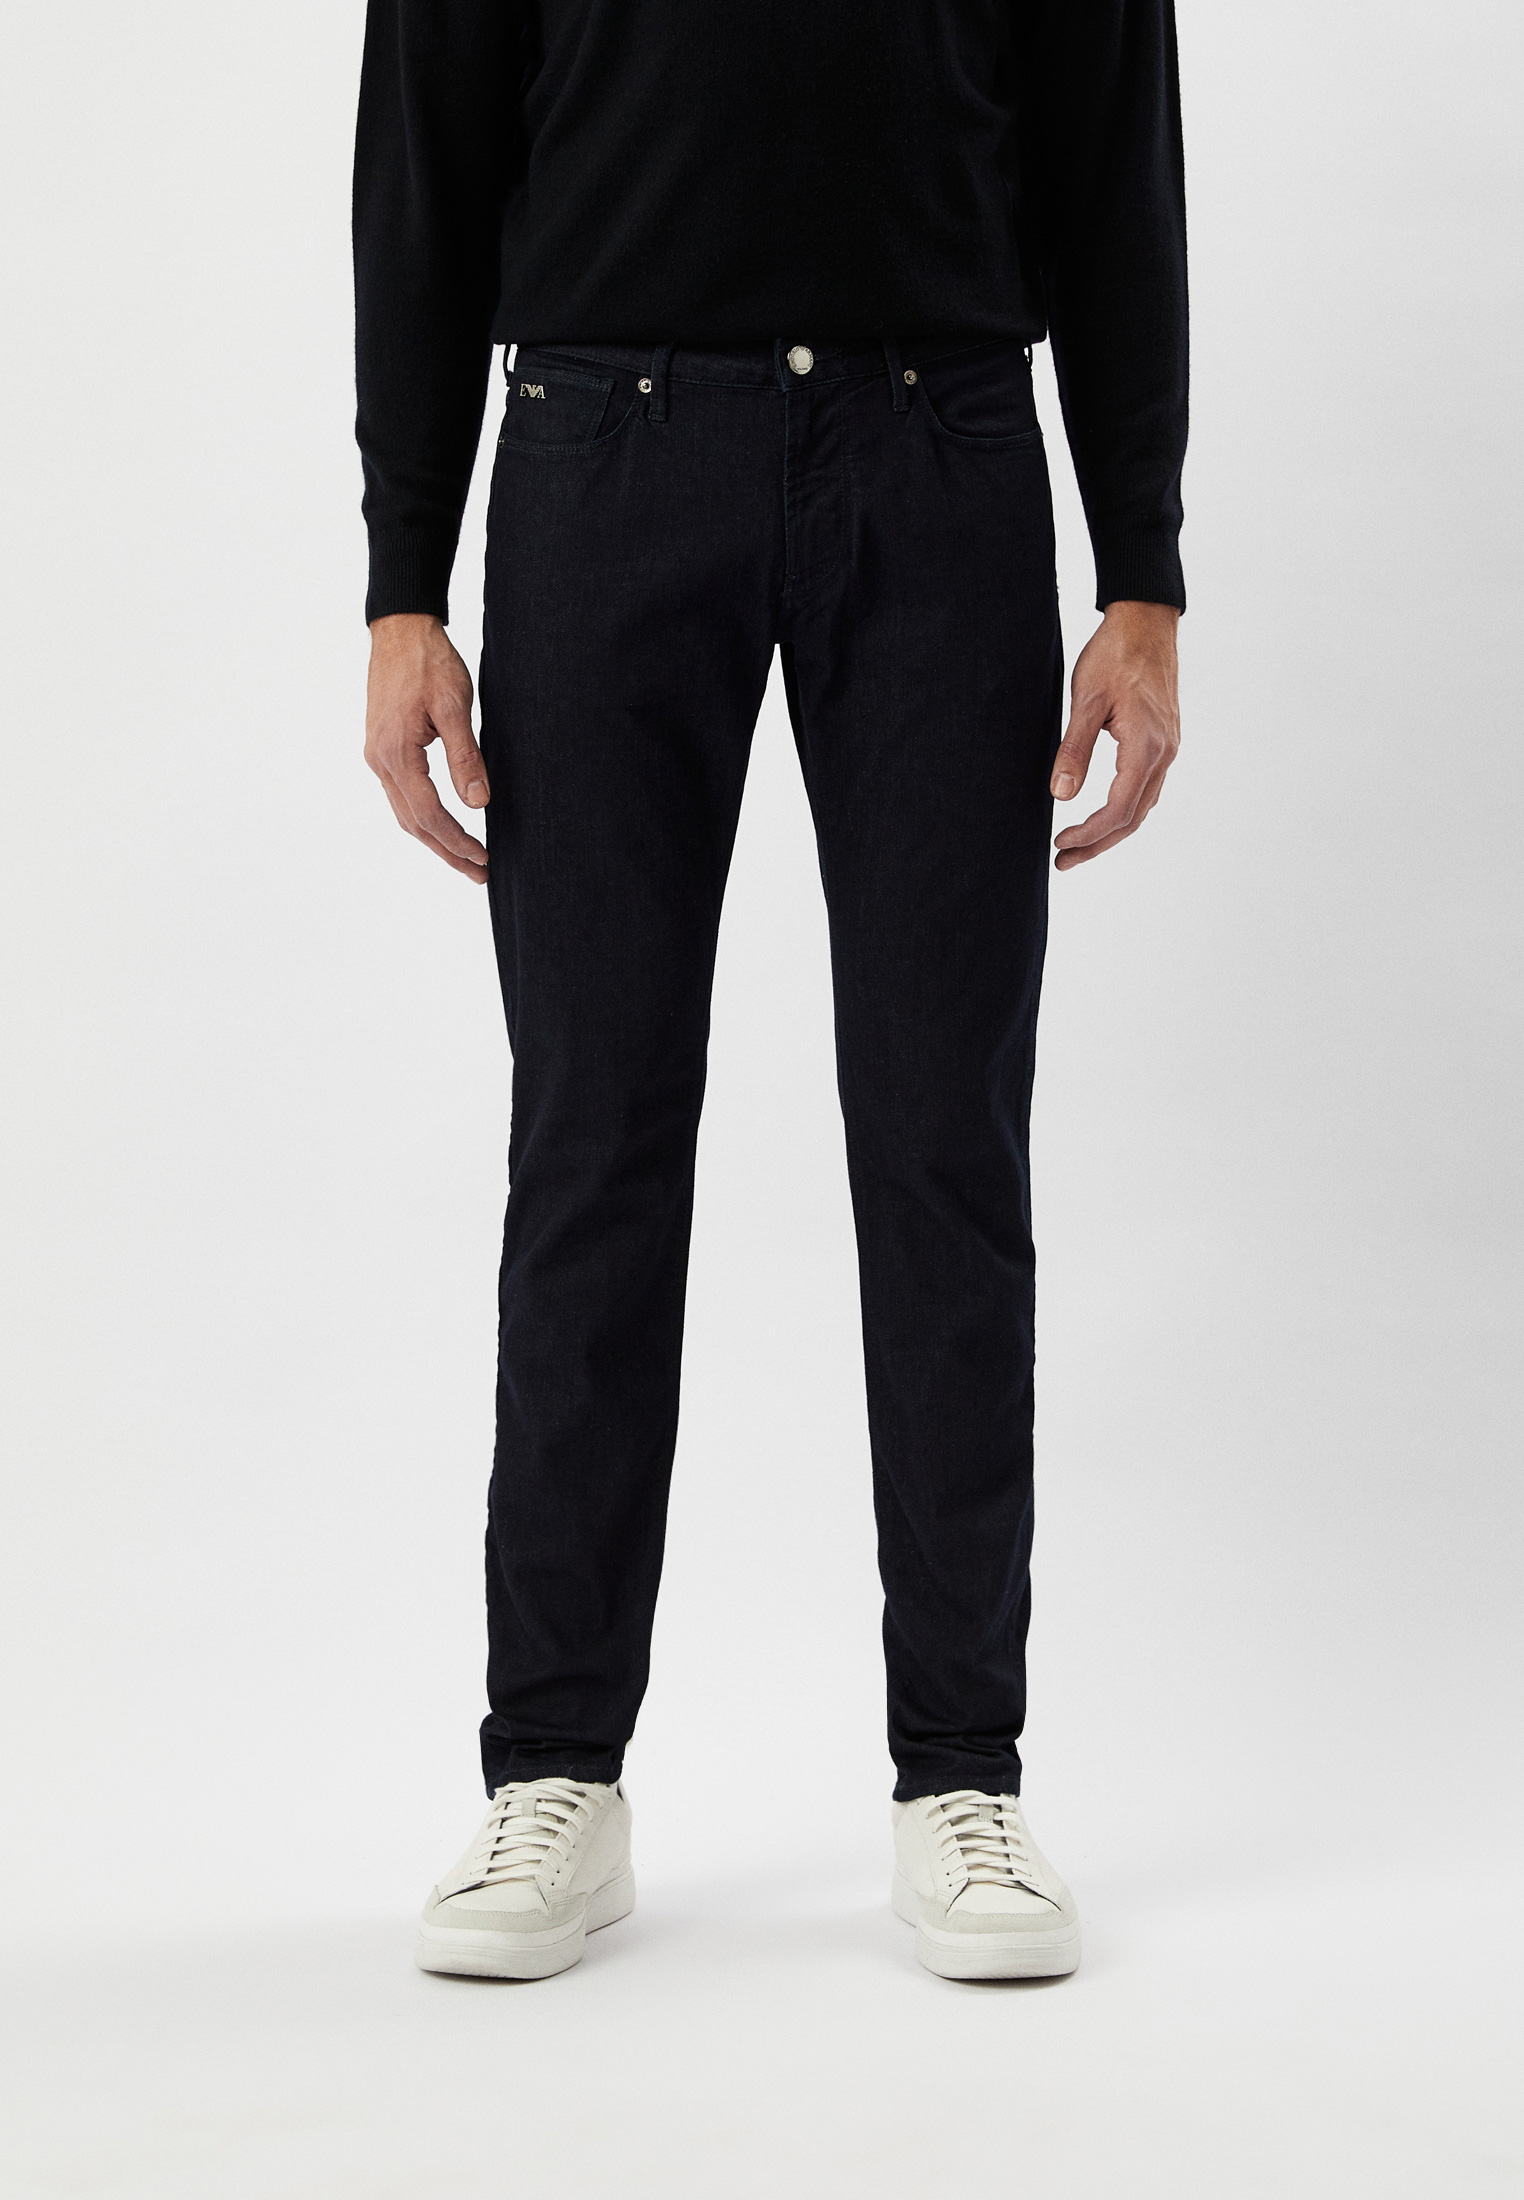 Мужские прямые джинсы Emporio Armani (Эмпорио Армани) 8N1J06 1G19Z: изображение 1